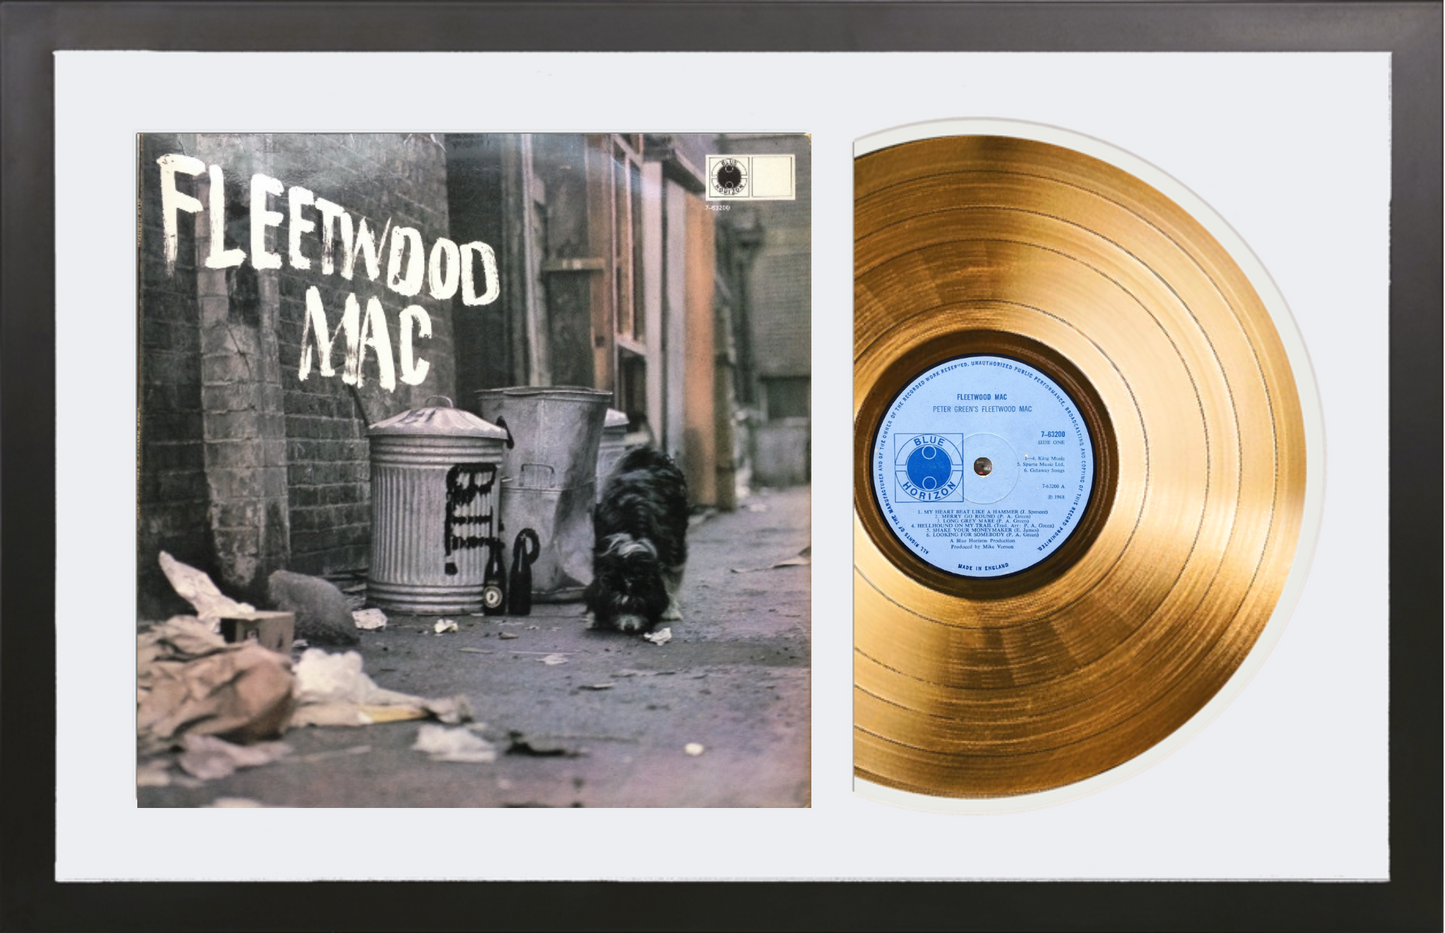 Fleetwood Mac - Fleetwood Mac (1968) - 14K Gold Plated Vinyl